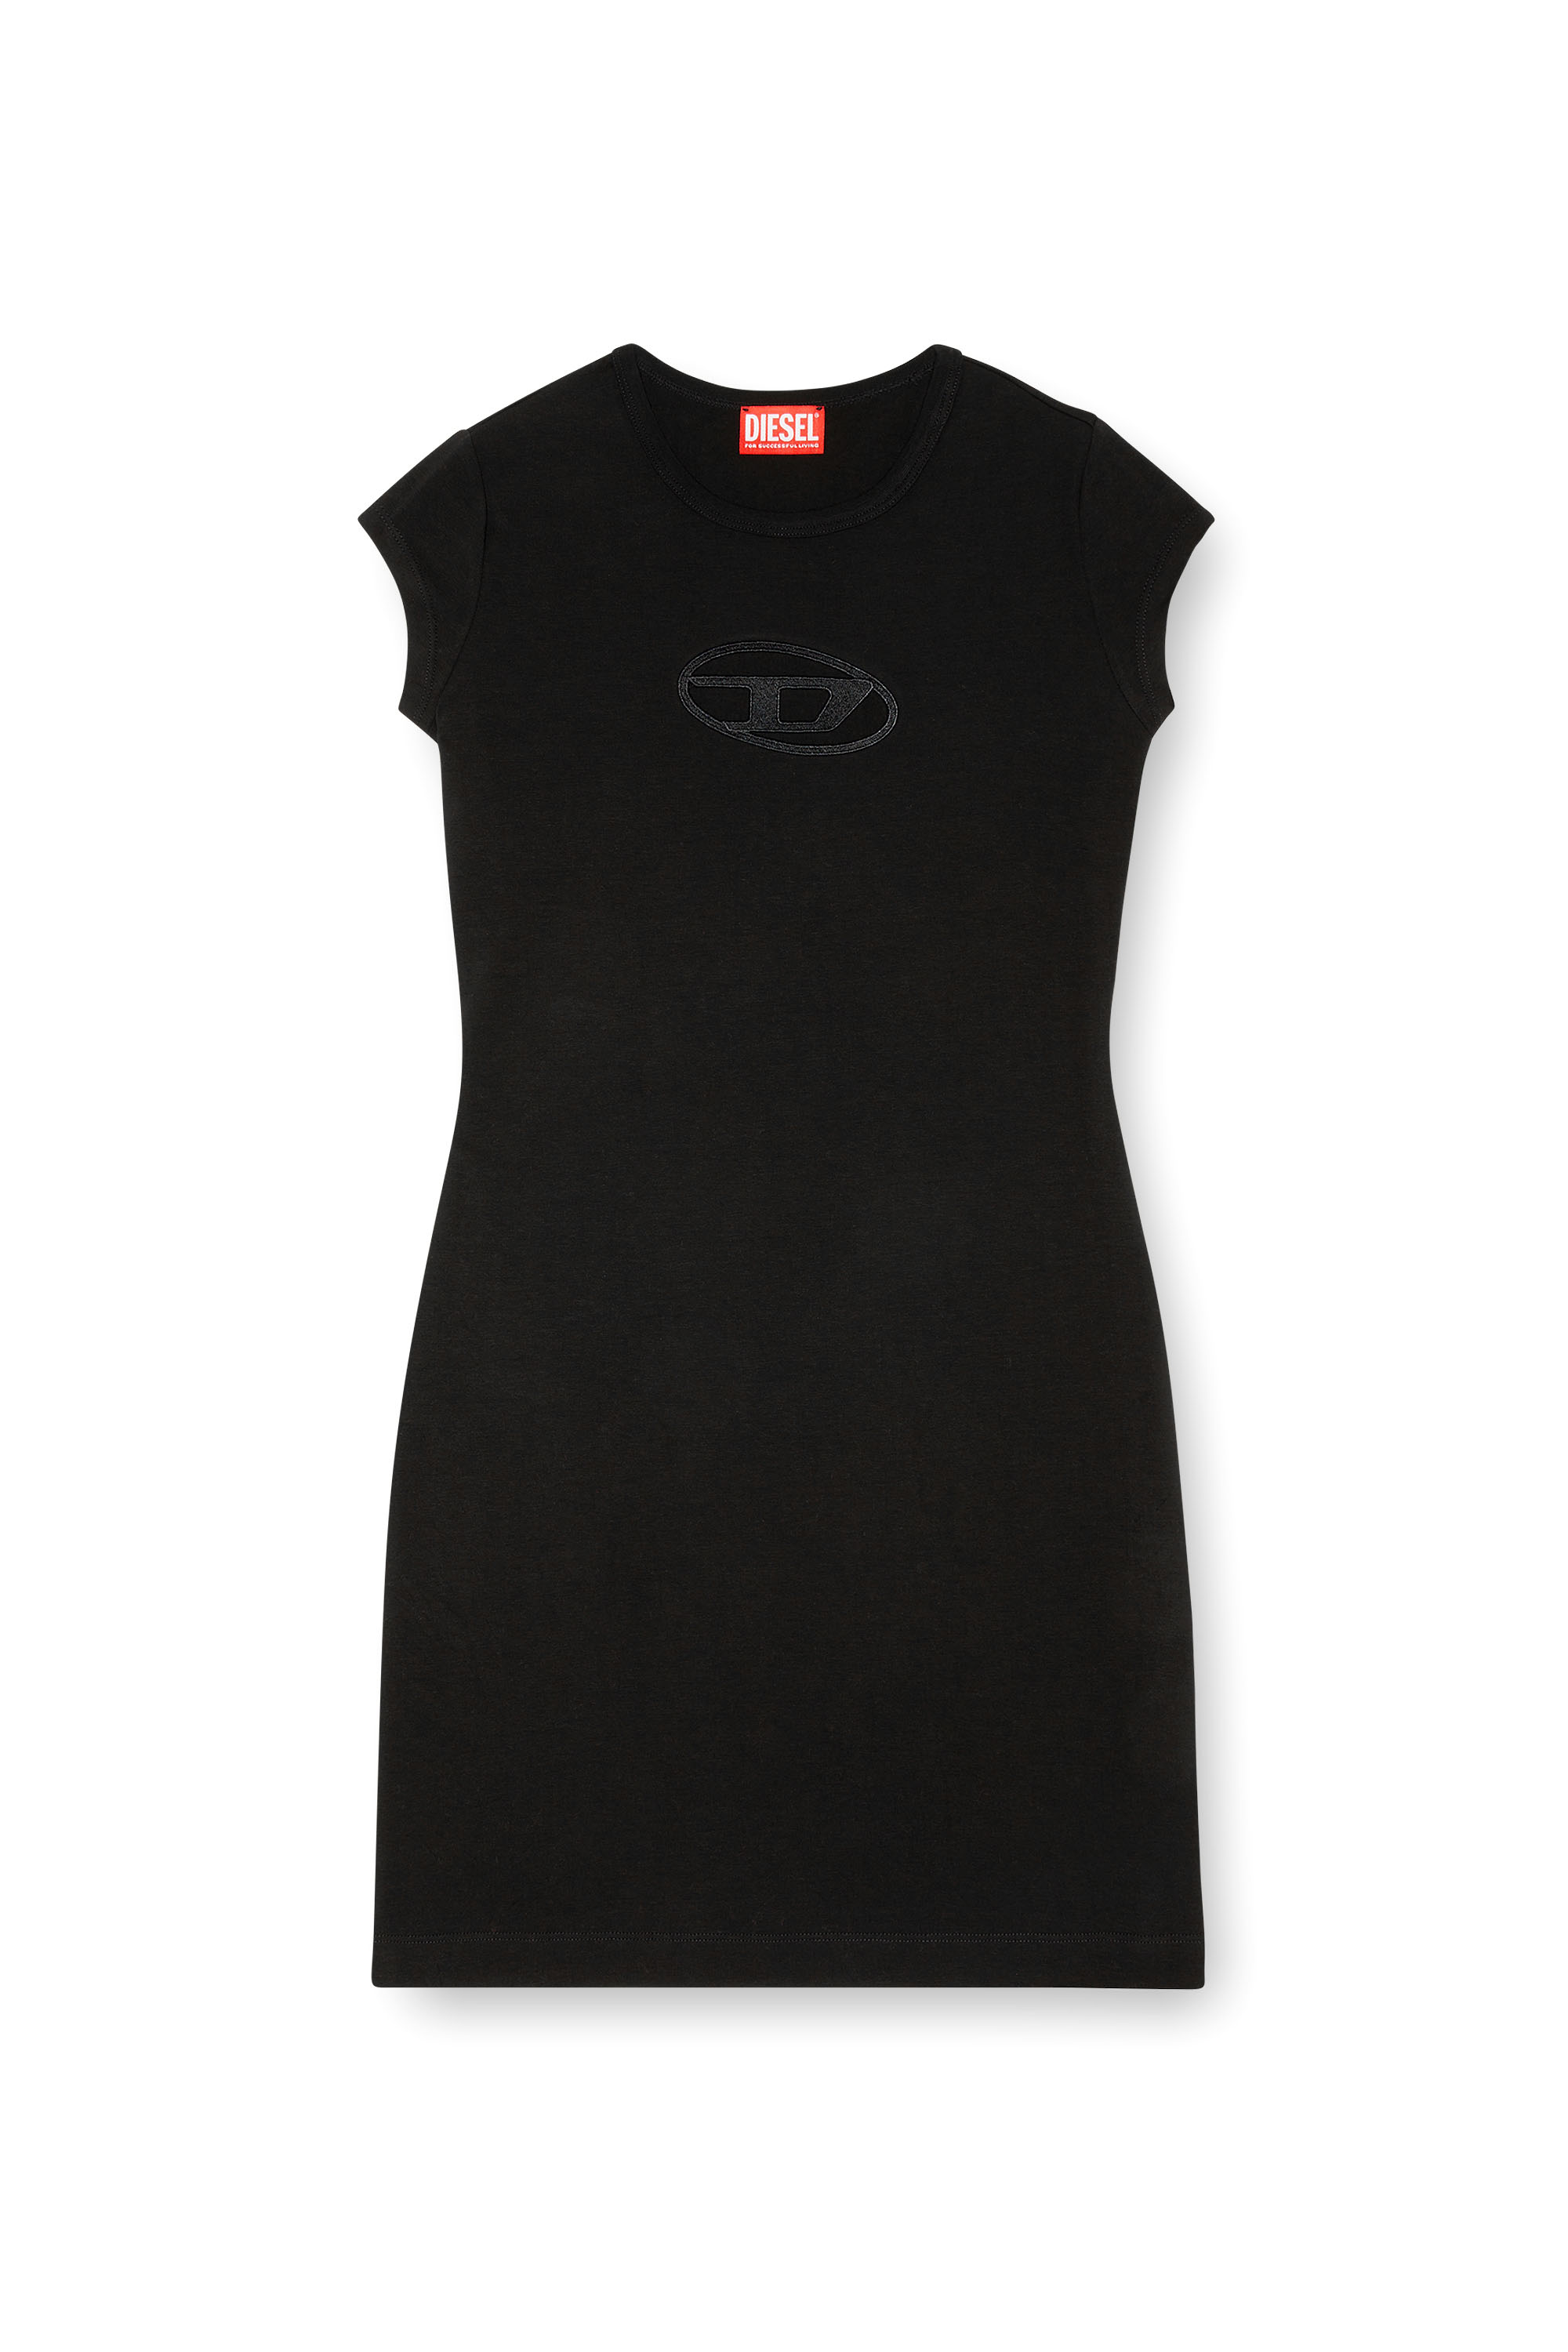 Diesel - D-ANGIEL, Mujer Vestido corto in Negro - Image 2